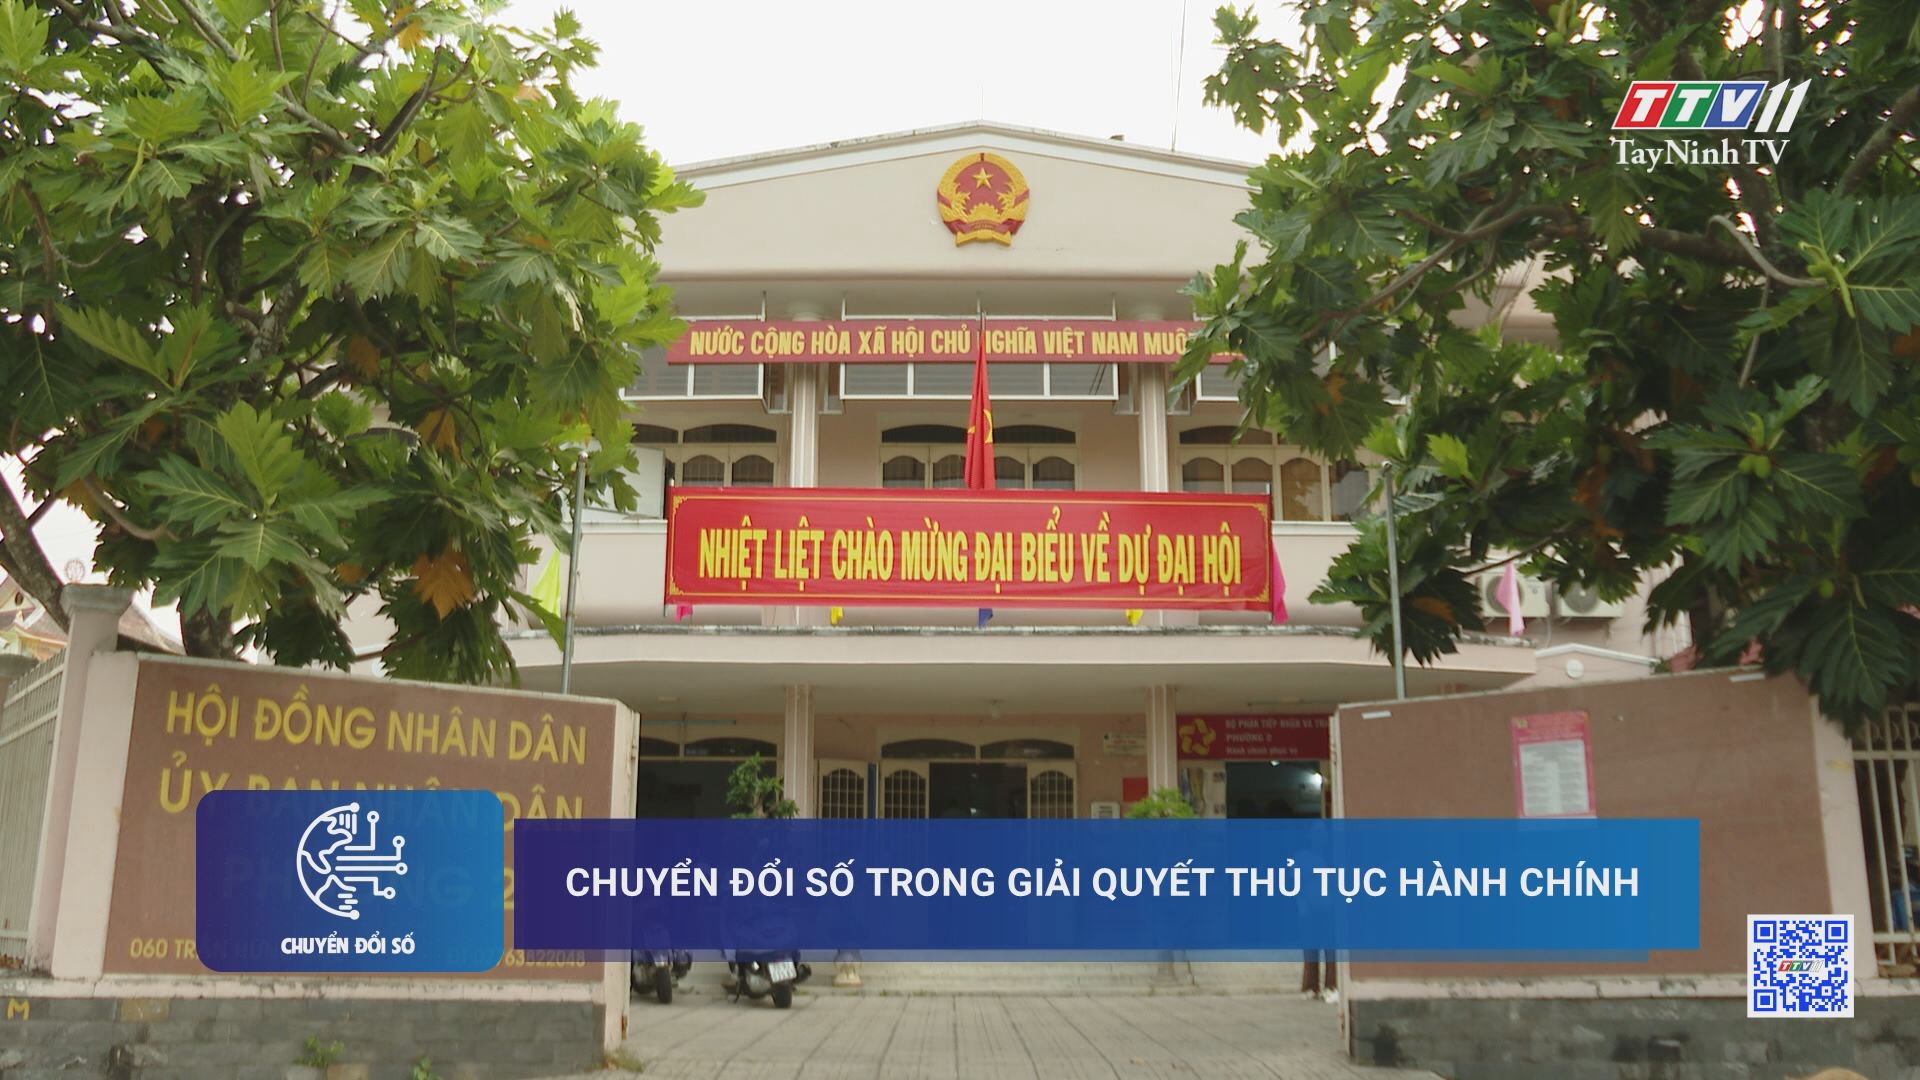 Chuyển đổi số trong giải quyết thủ tục hành chính | TayNinhTV